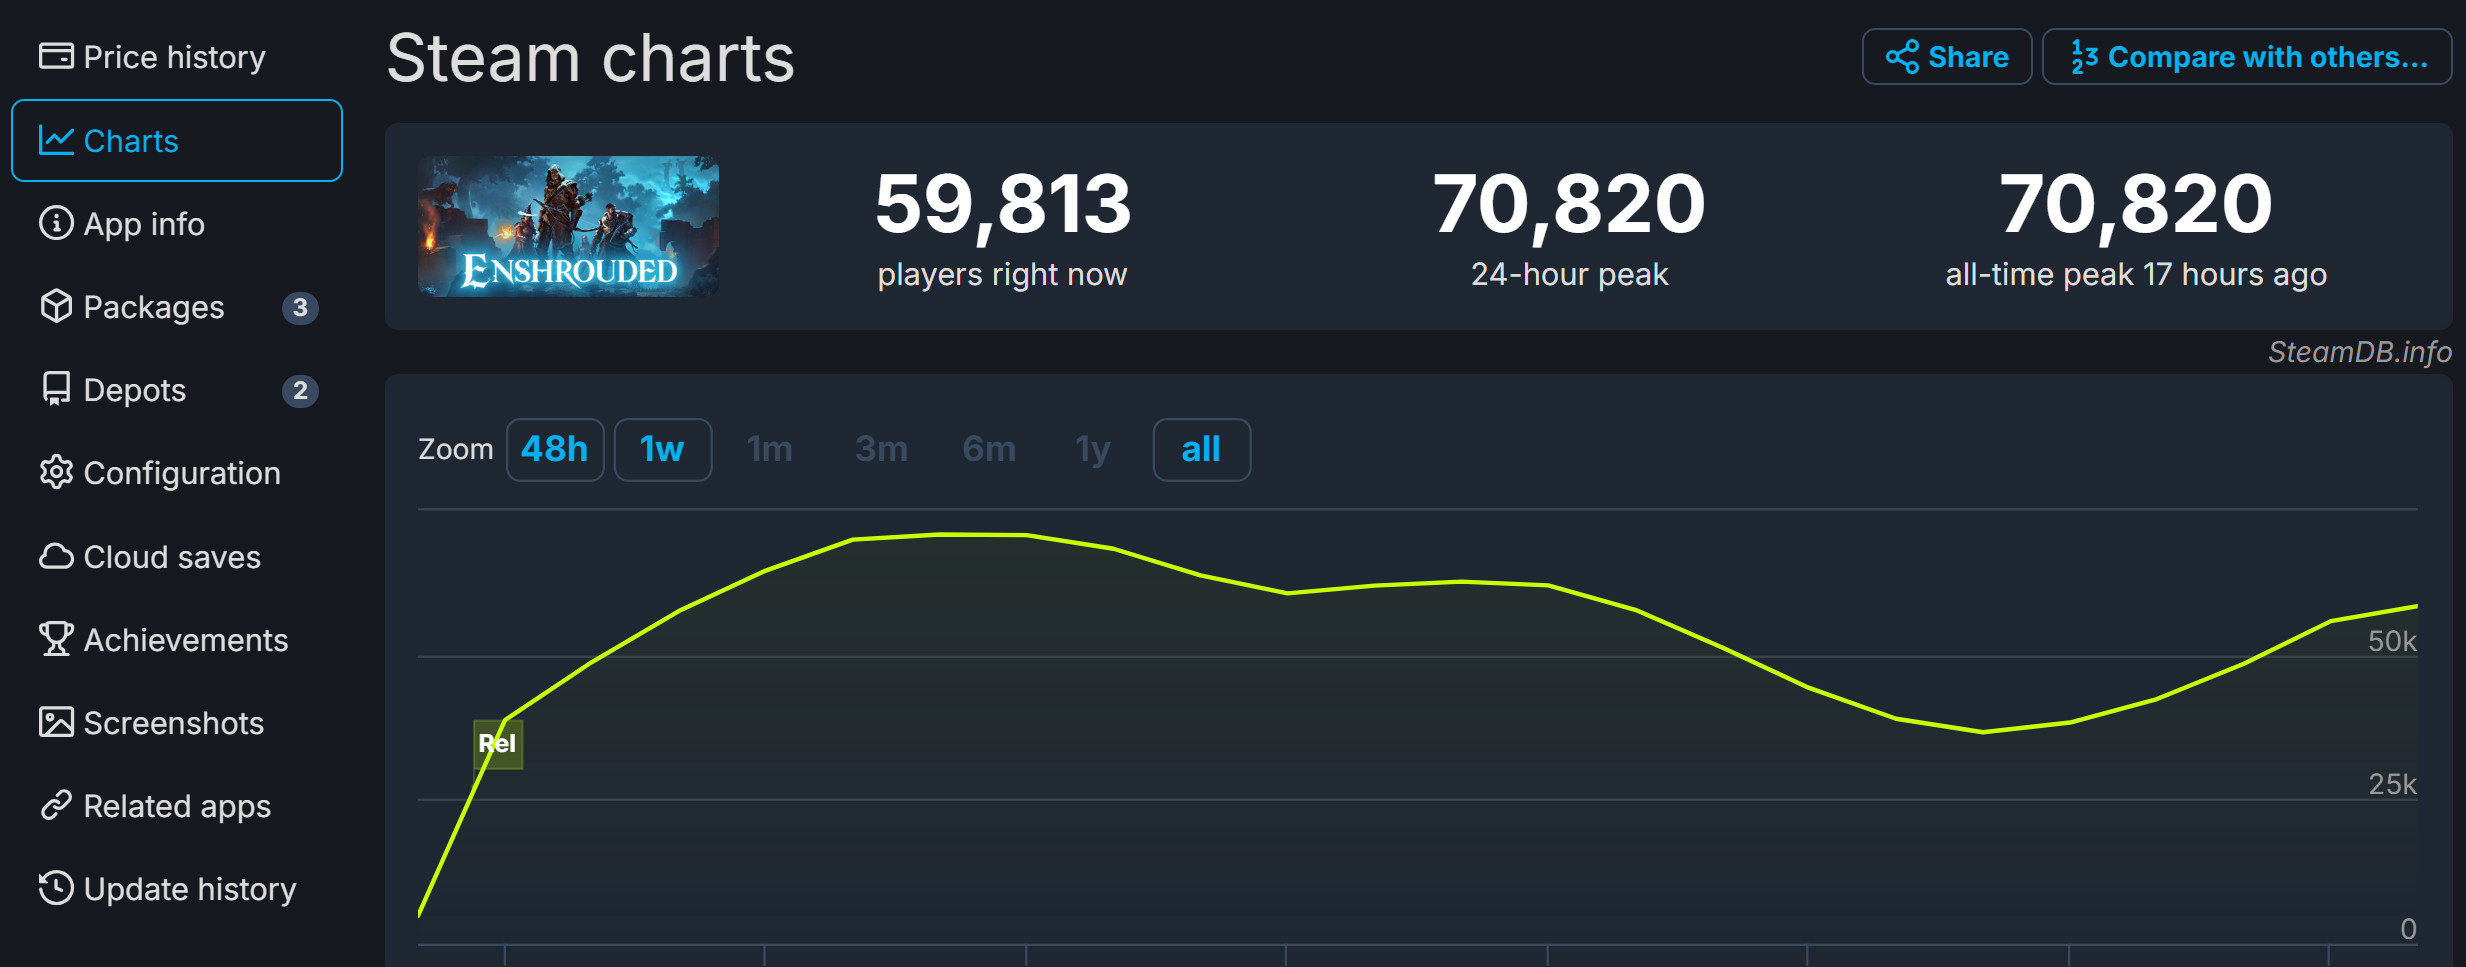 《雾锁王国》Steam特别好评 首发峰值超7万人